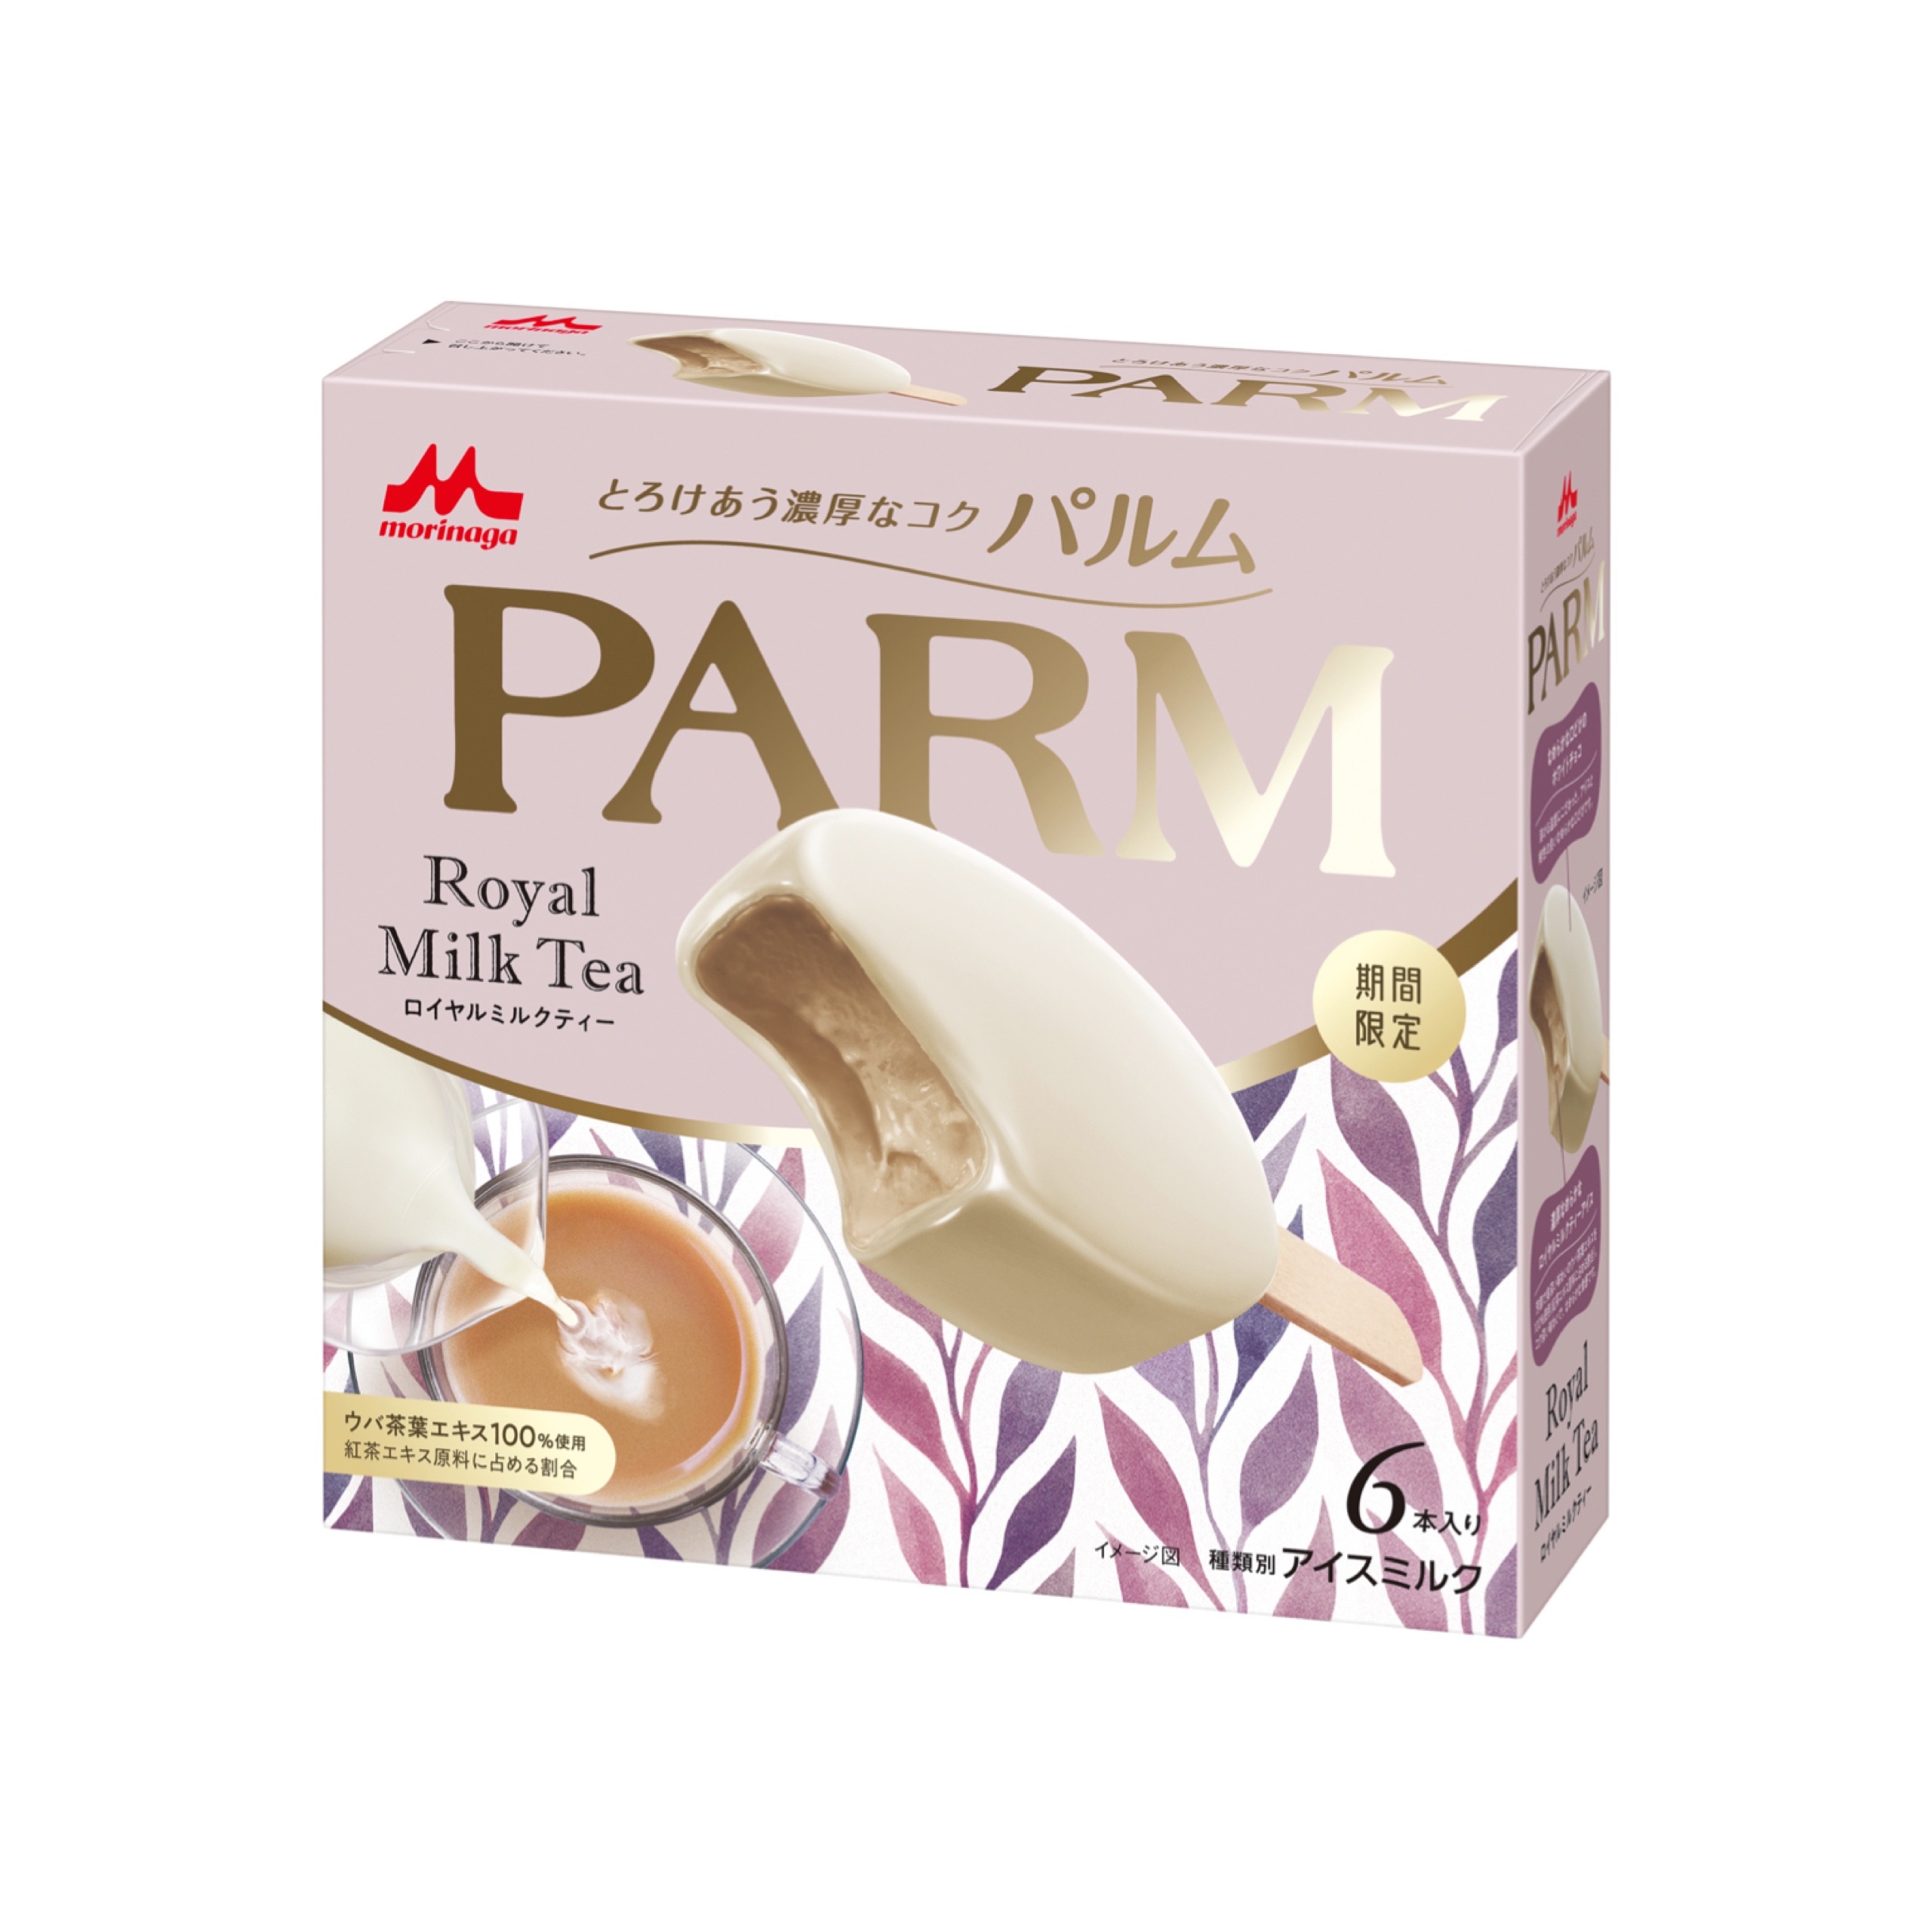 【新作アイス】ロイヤルミルクティーの芳醇な味わいが堪能できる「PARM(パルム) ロイヤルミルクティー(6本入り)」が3月18日(月)より期間限定発売🍨🤎💭